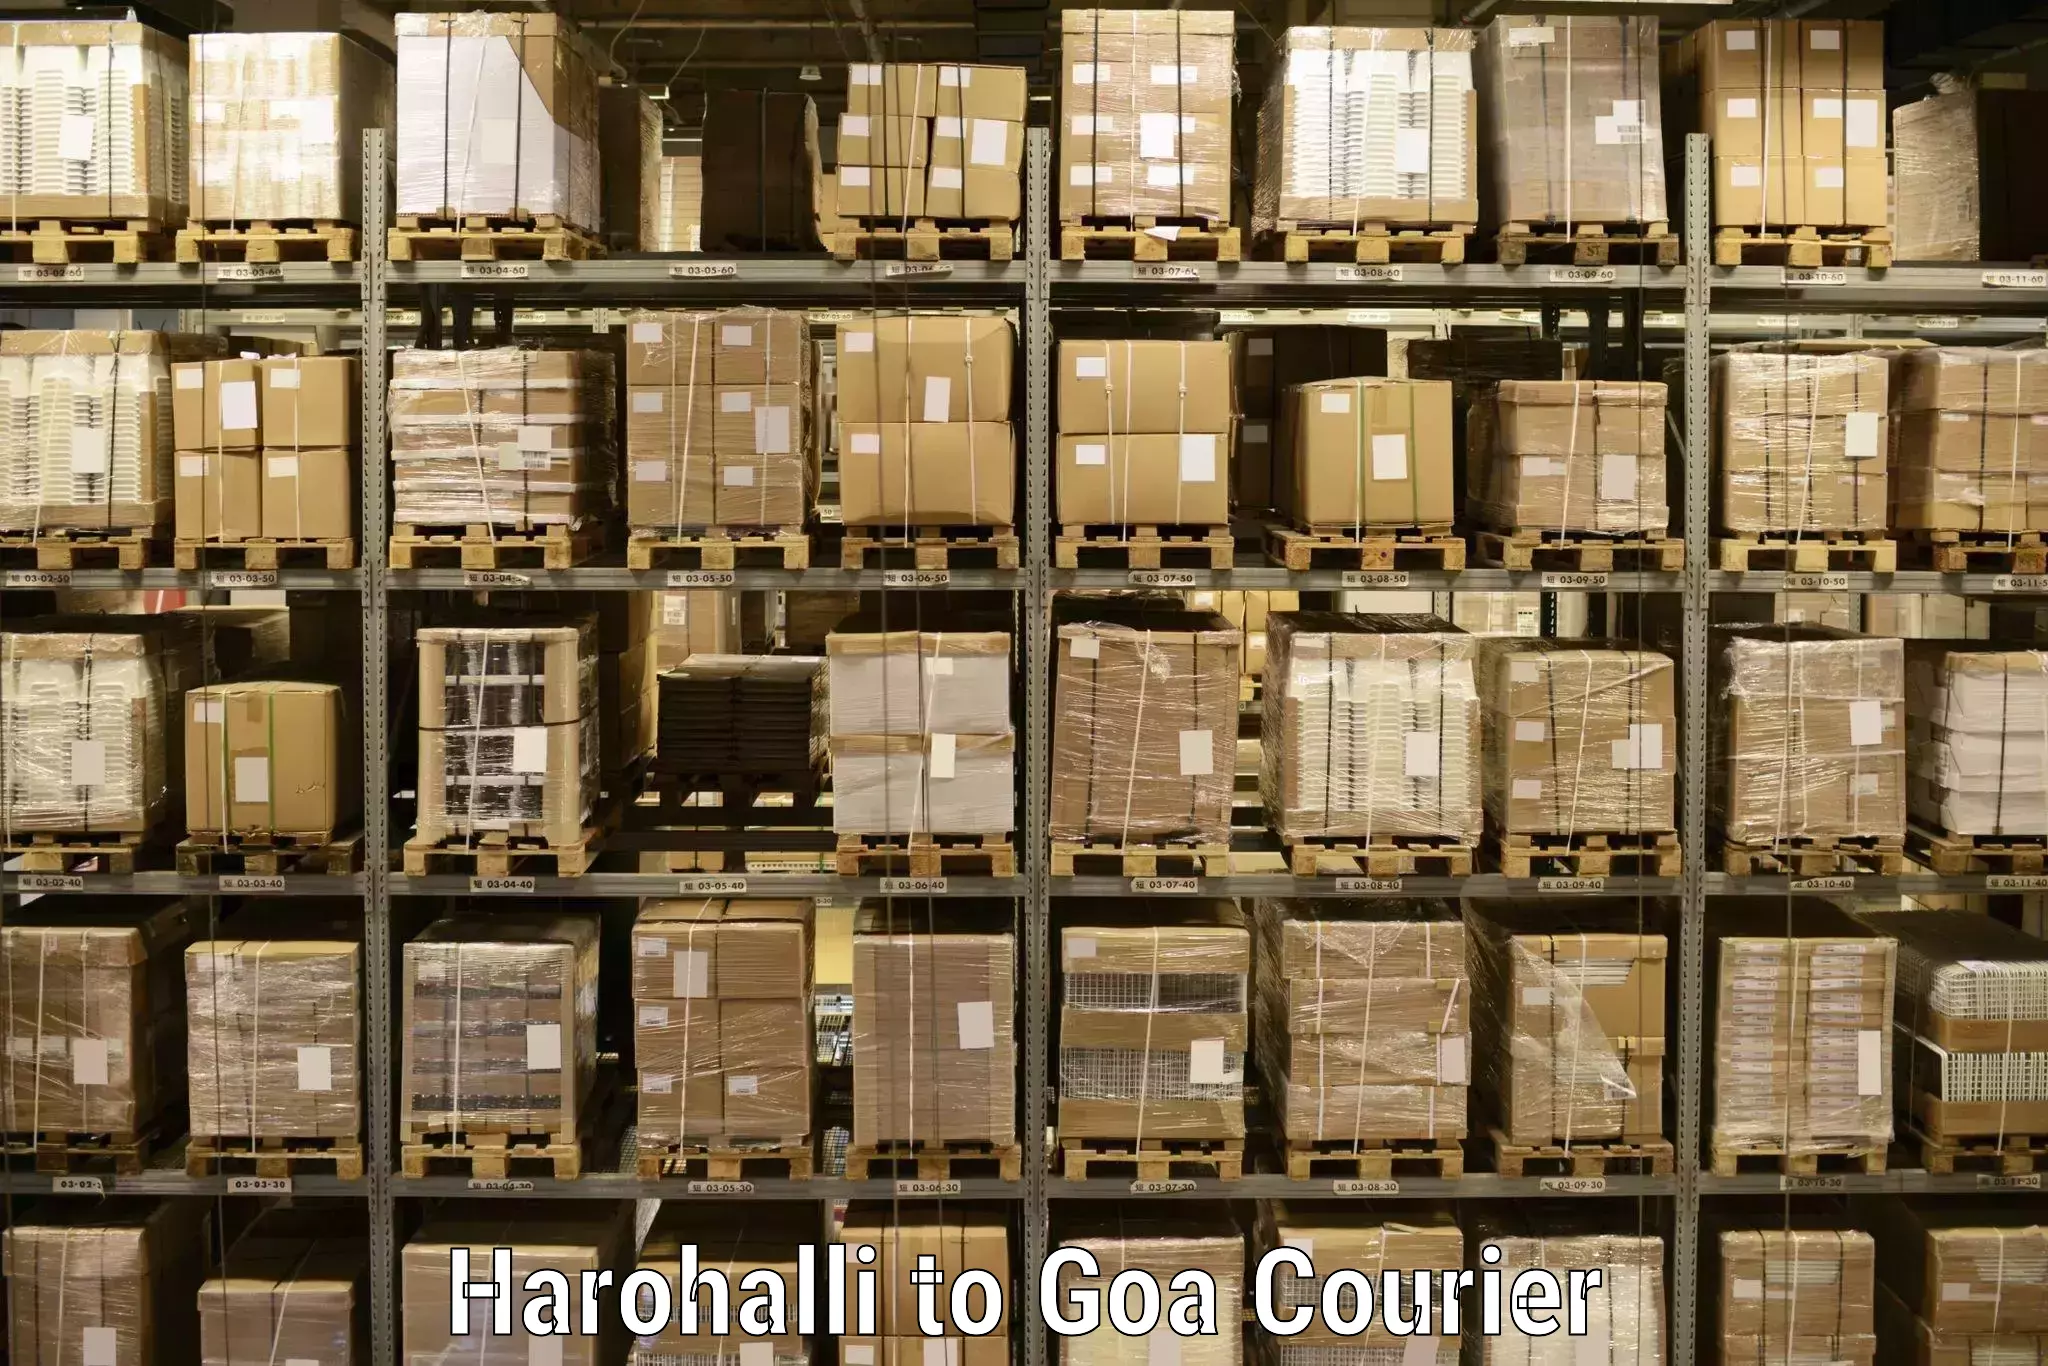 International parcel service Harohalli to Panaji